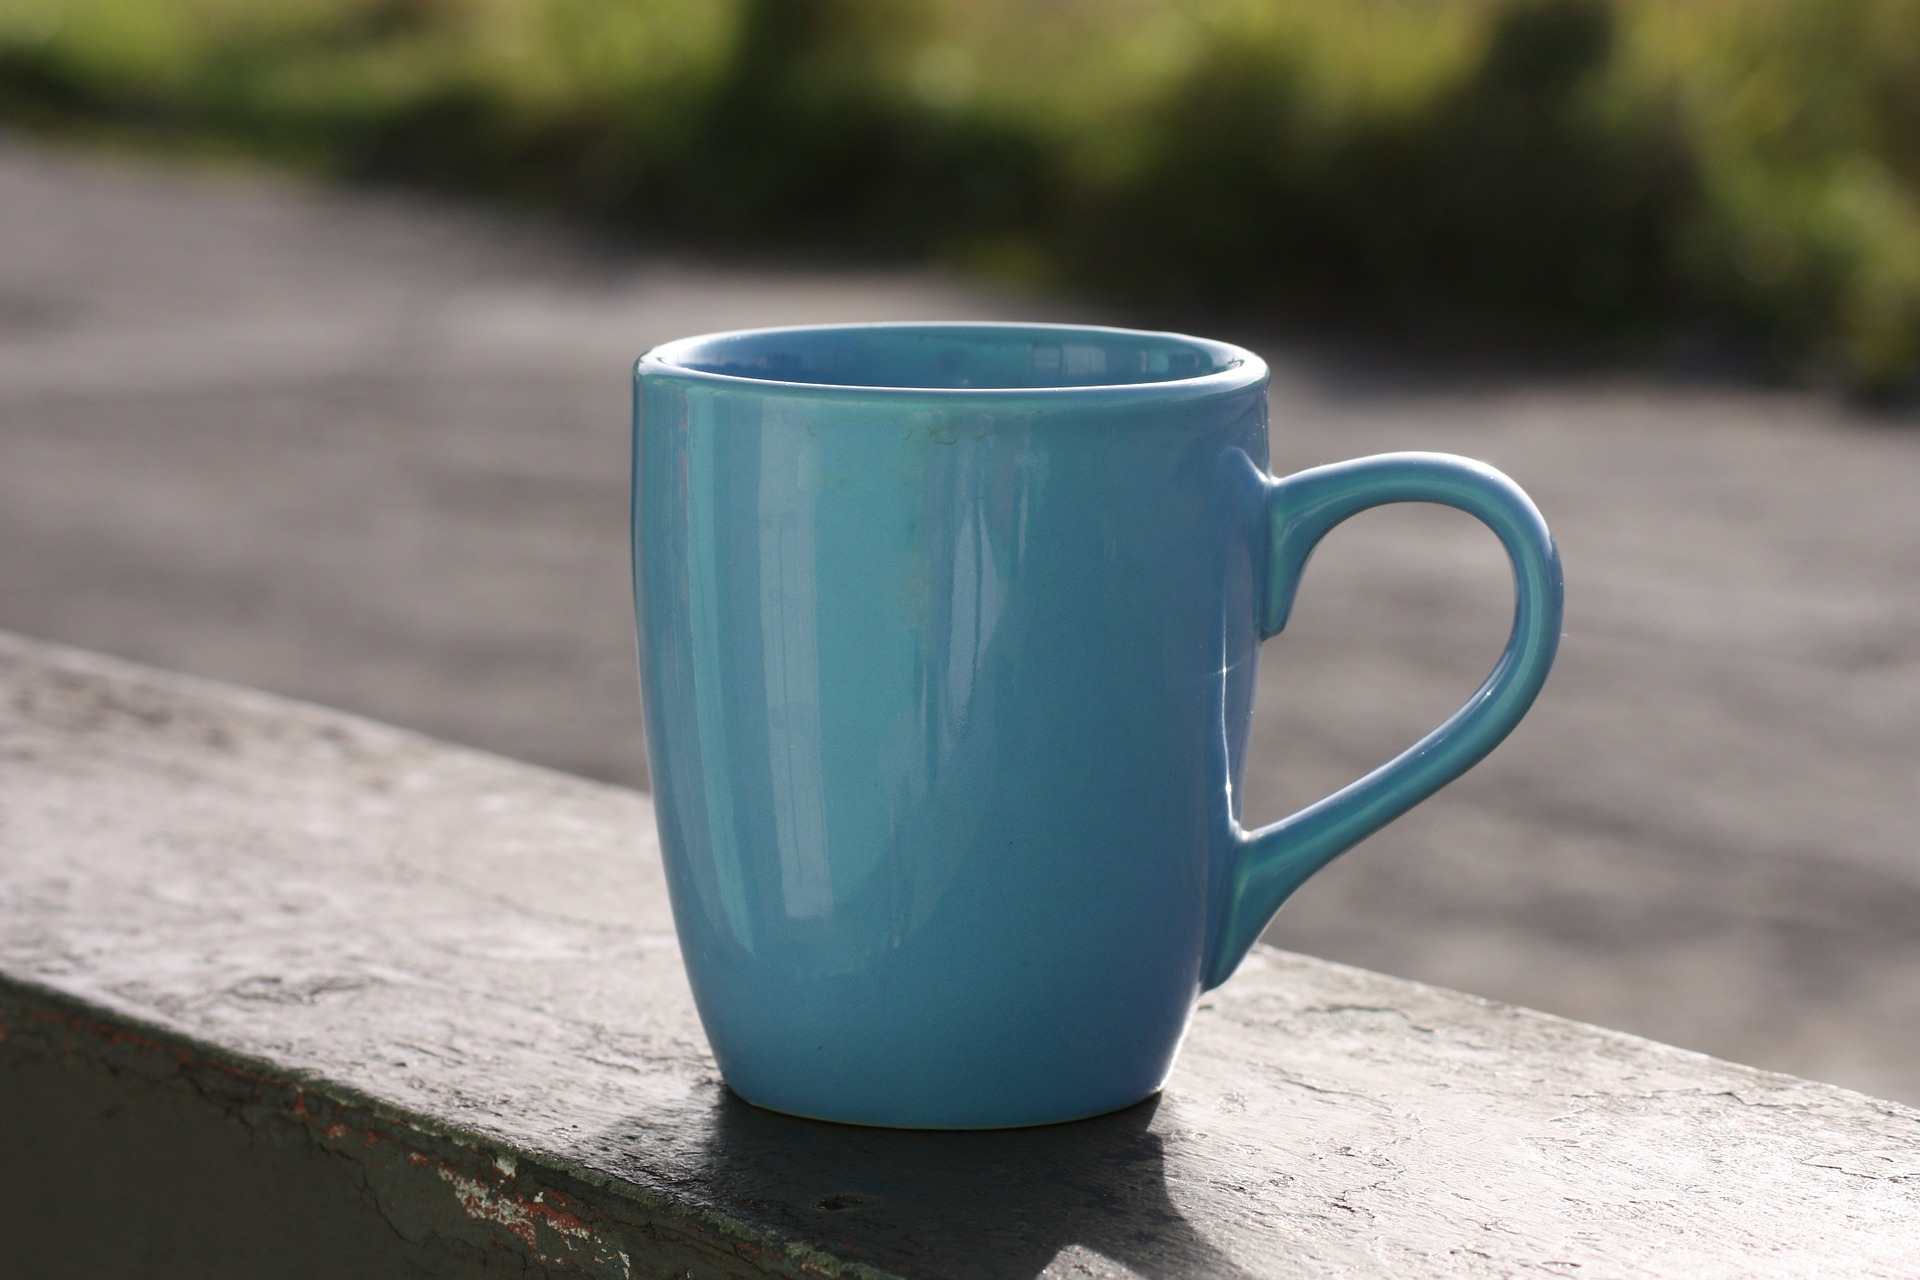 a mug to show size